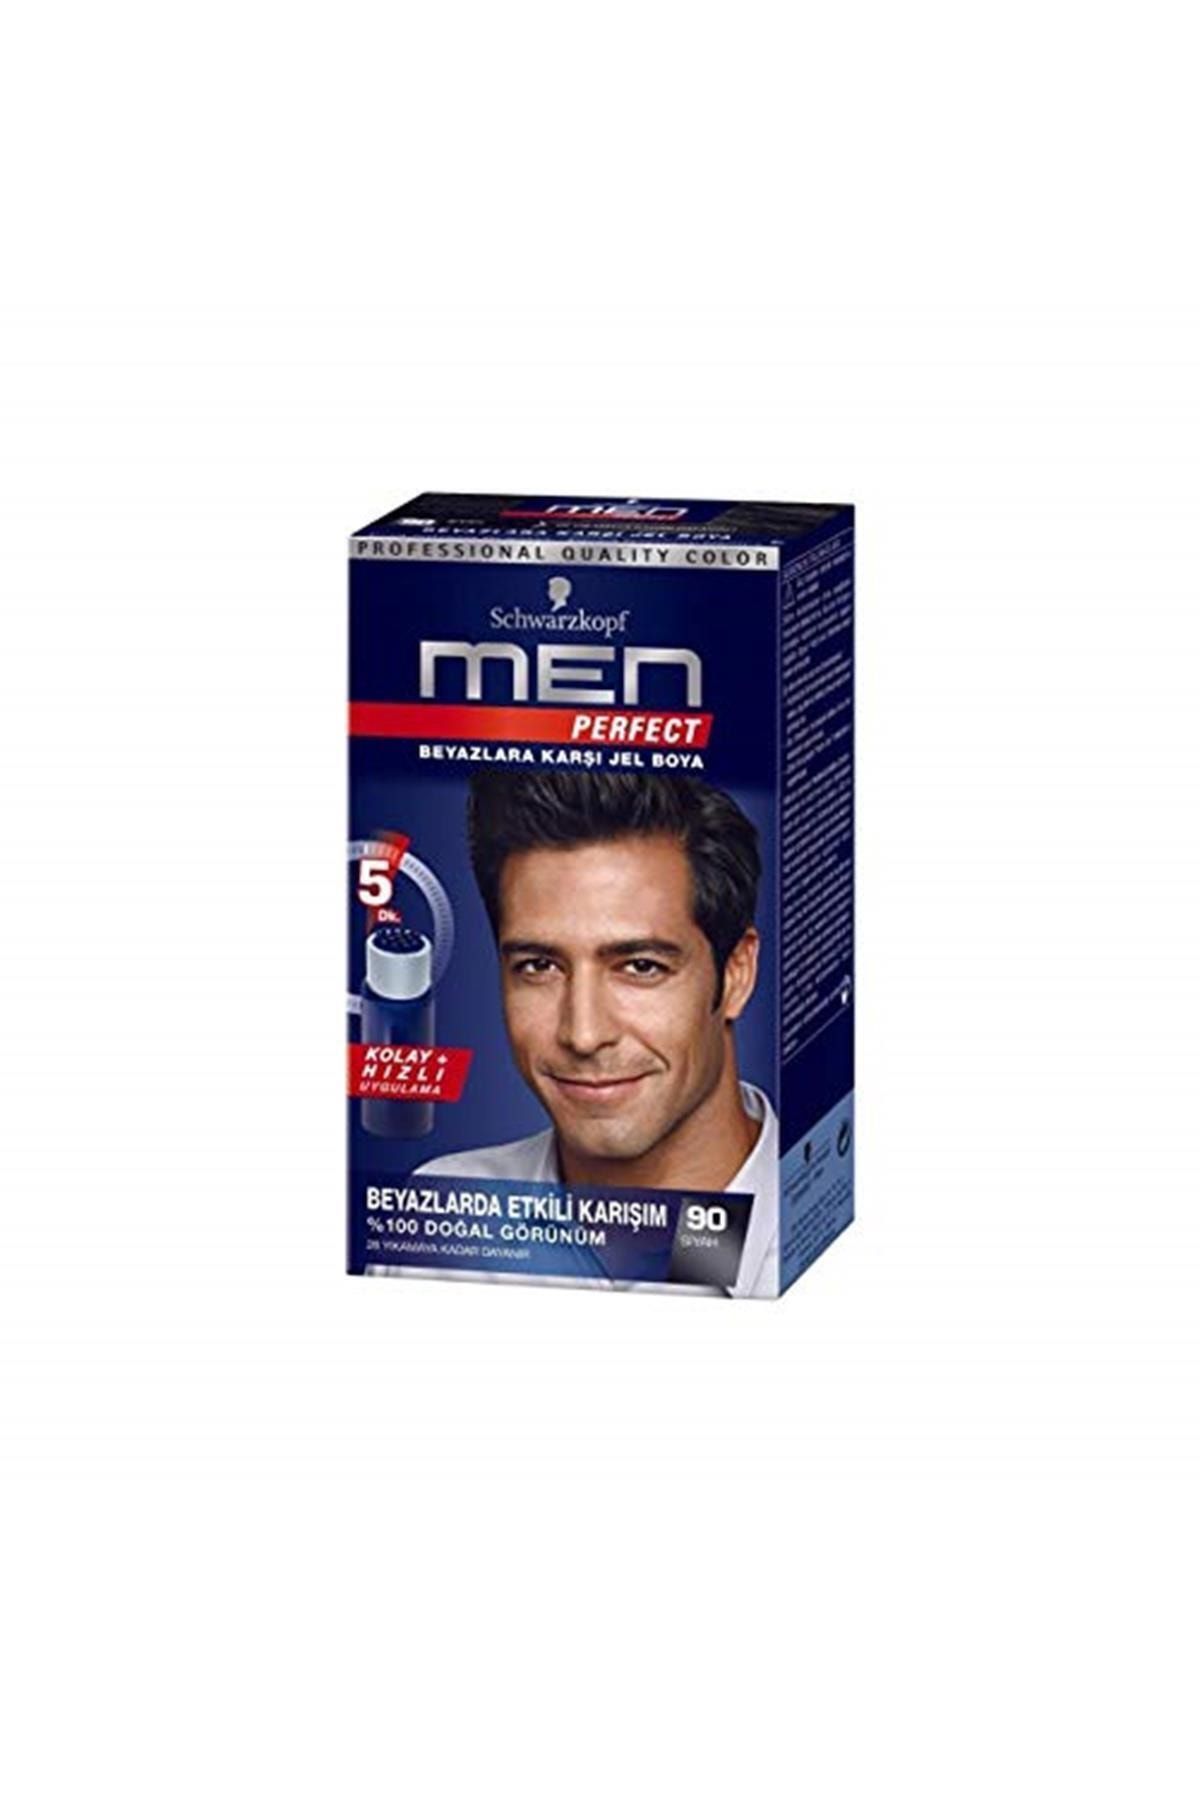 Schwarzkopf Marka: Men Perfect Saç Boyası 90 - Siyah, 80 Ml Kategori: Saç Boyası